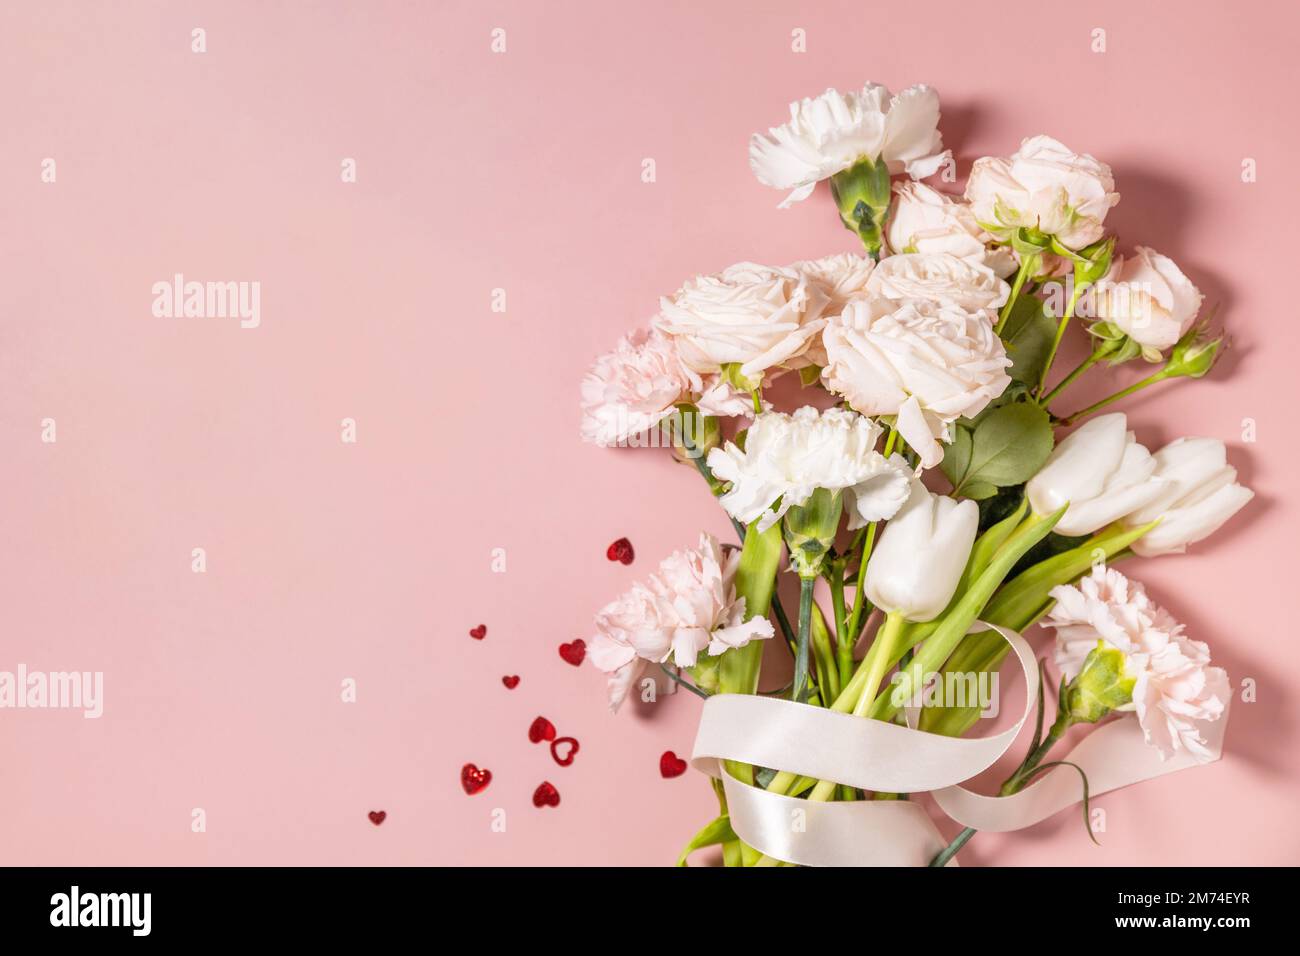 Valentinstag-Grußkarte mit wunderschönen Blumen und Herzen auf pinkfarbenem Hintergrund. Valentinstag, Frauentag, Hochzeit, Geburtstag oder Muttertag. Vie Stockfoto